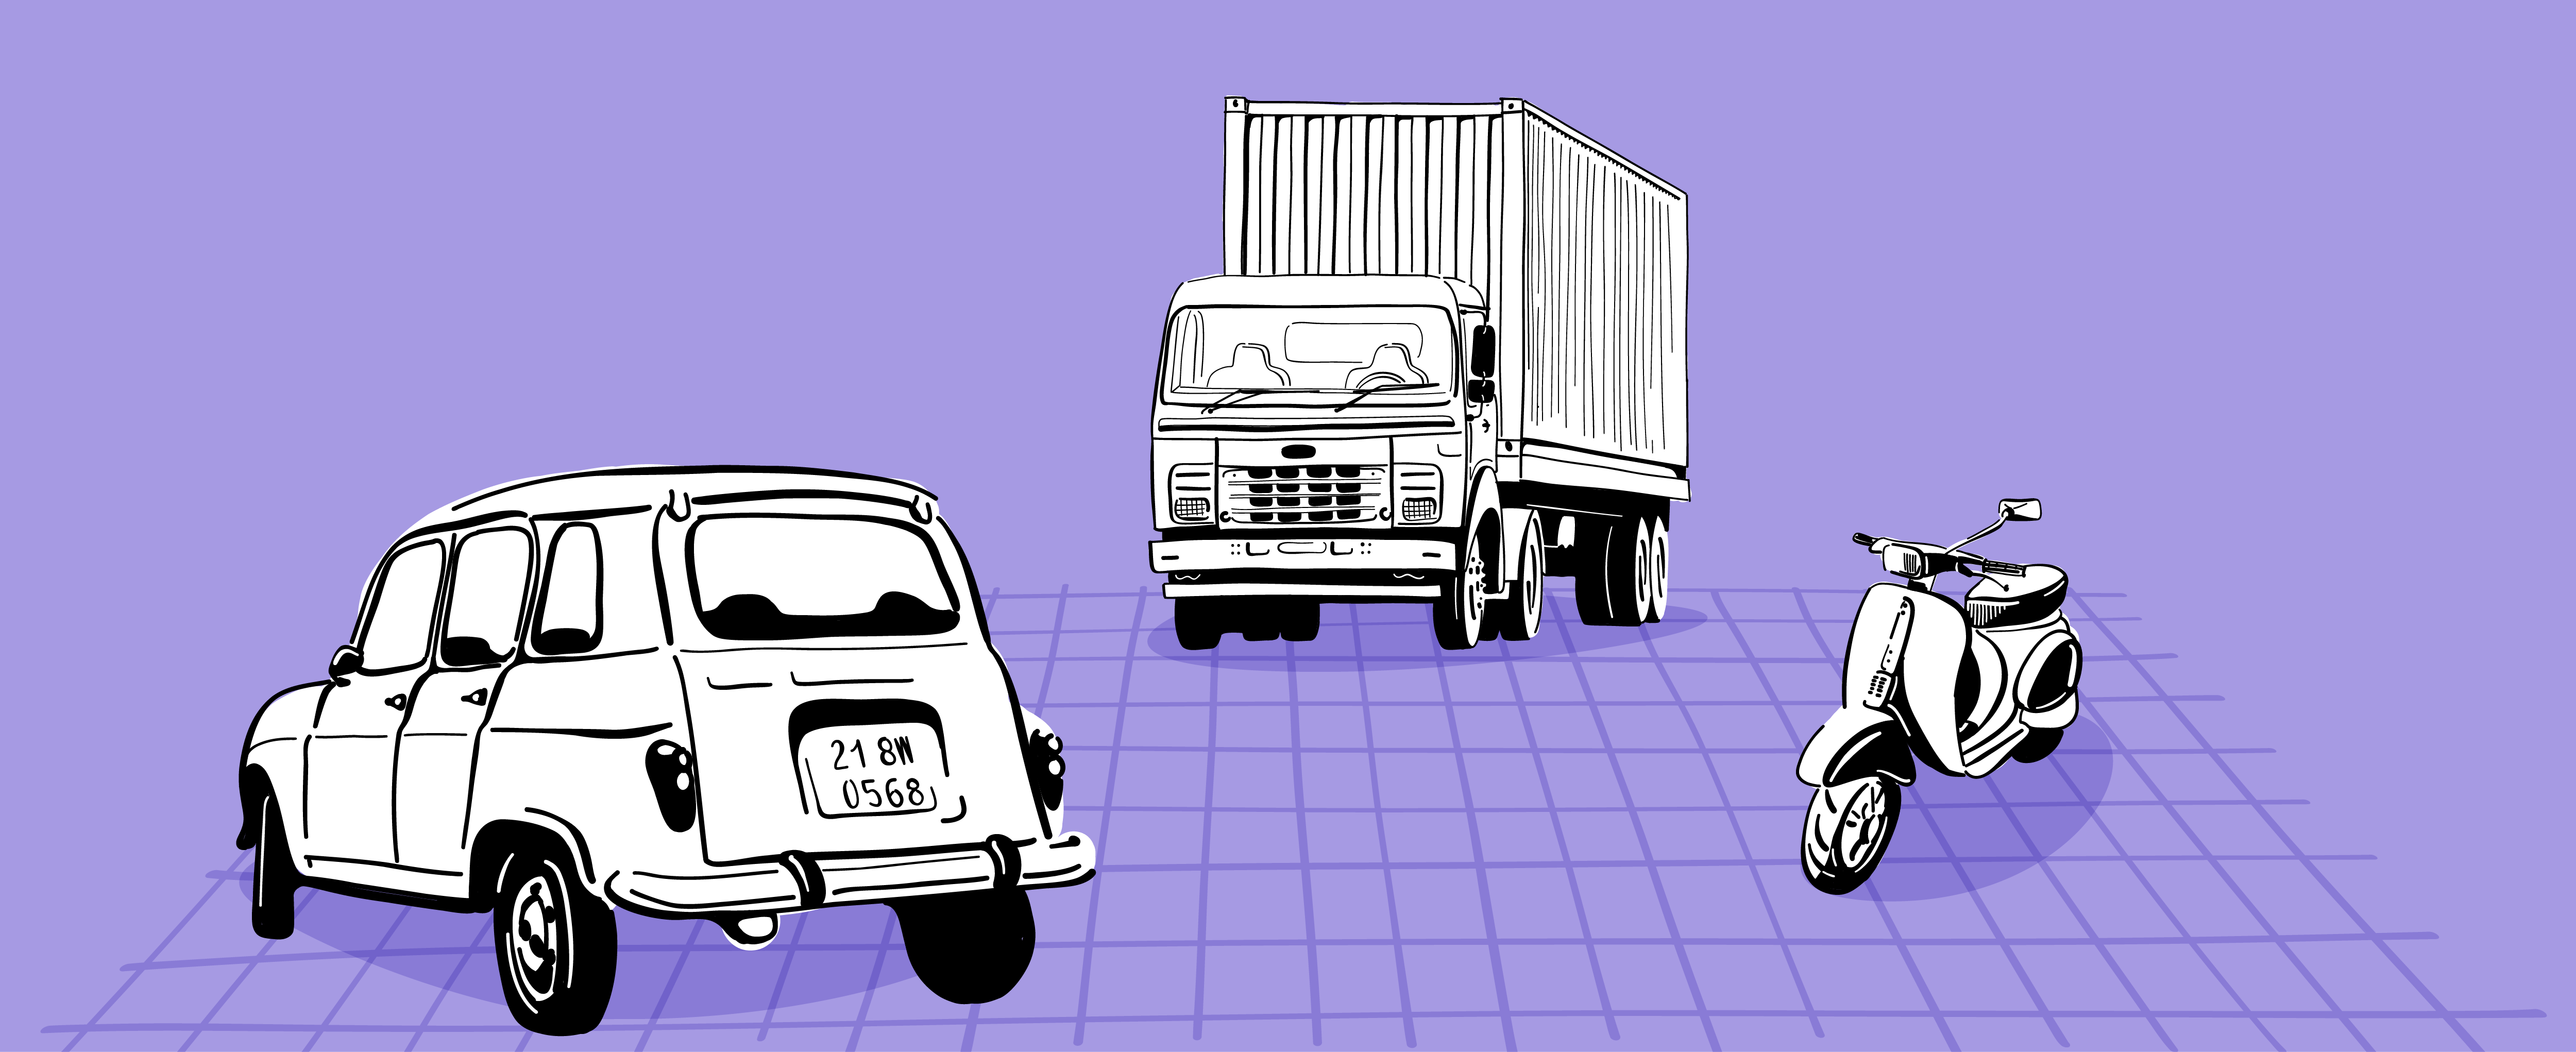 Car, truck and bike